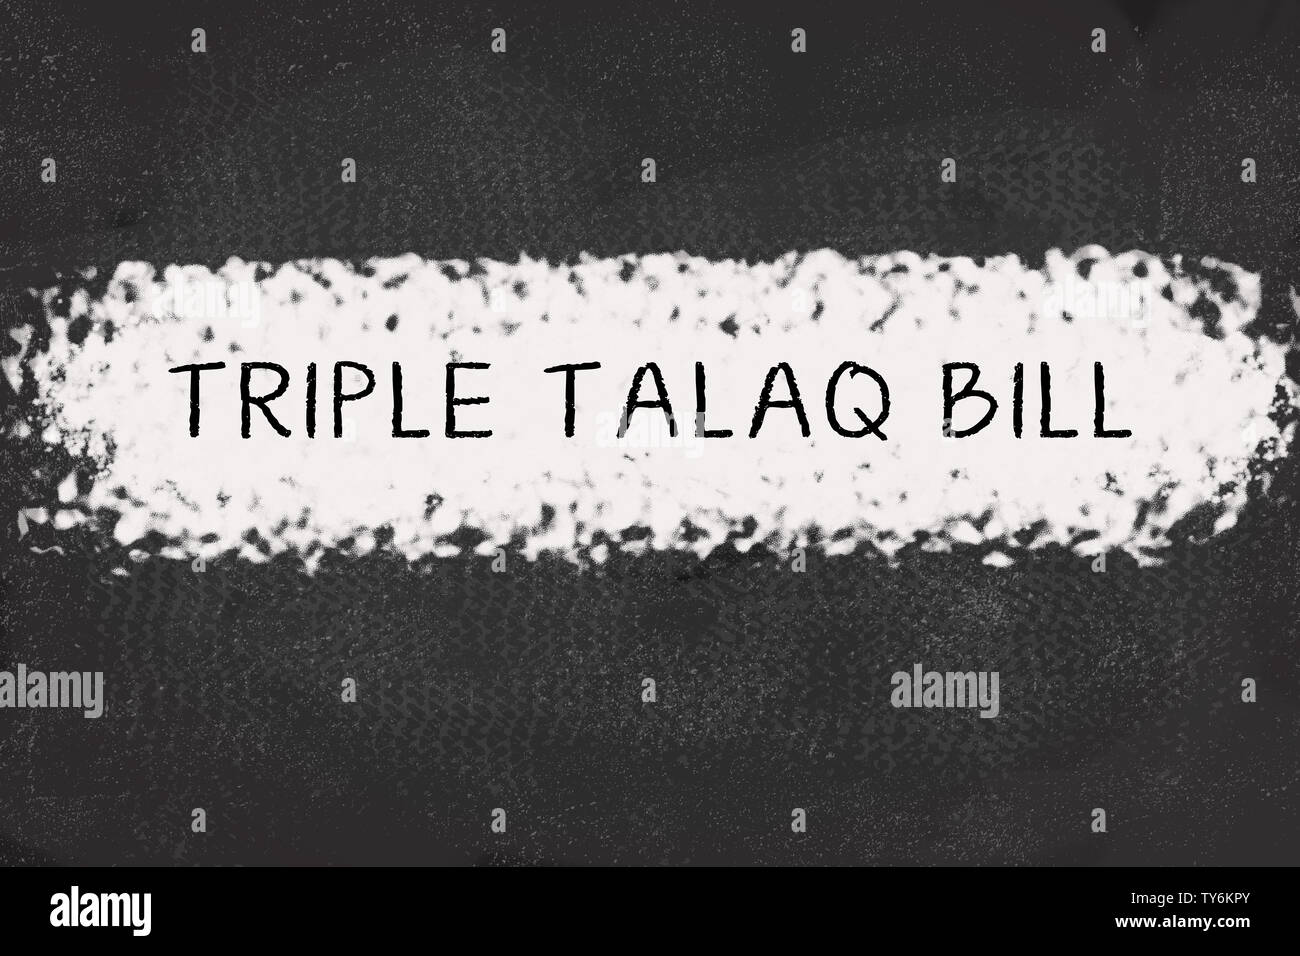 TRIPLE TALAQ BILL printed in Black text on black board Stock Photo